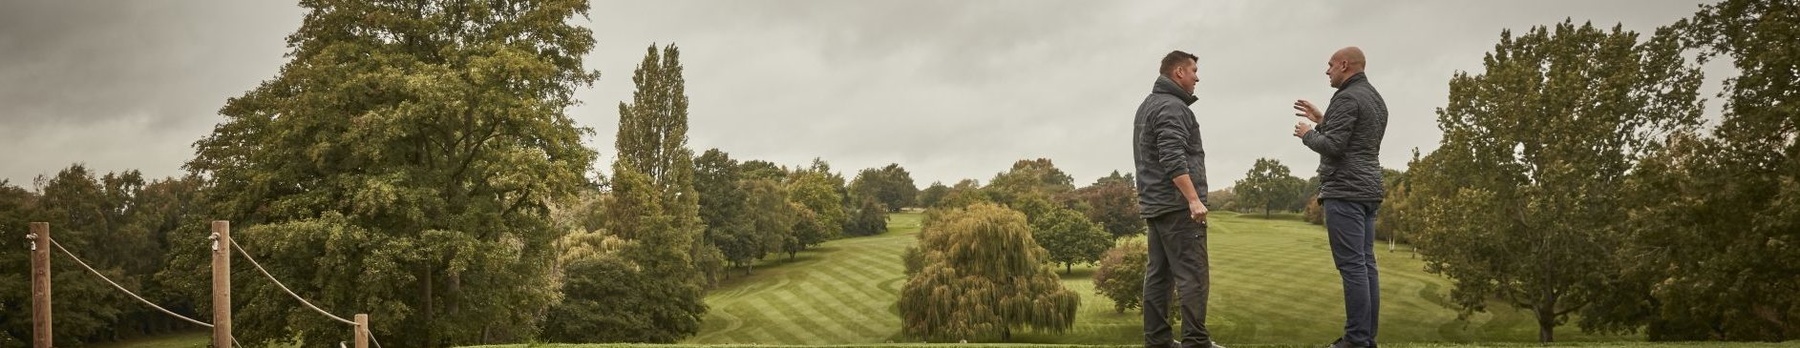 Oxford Golf Club_HPmod_0739